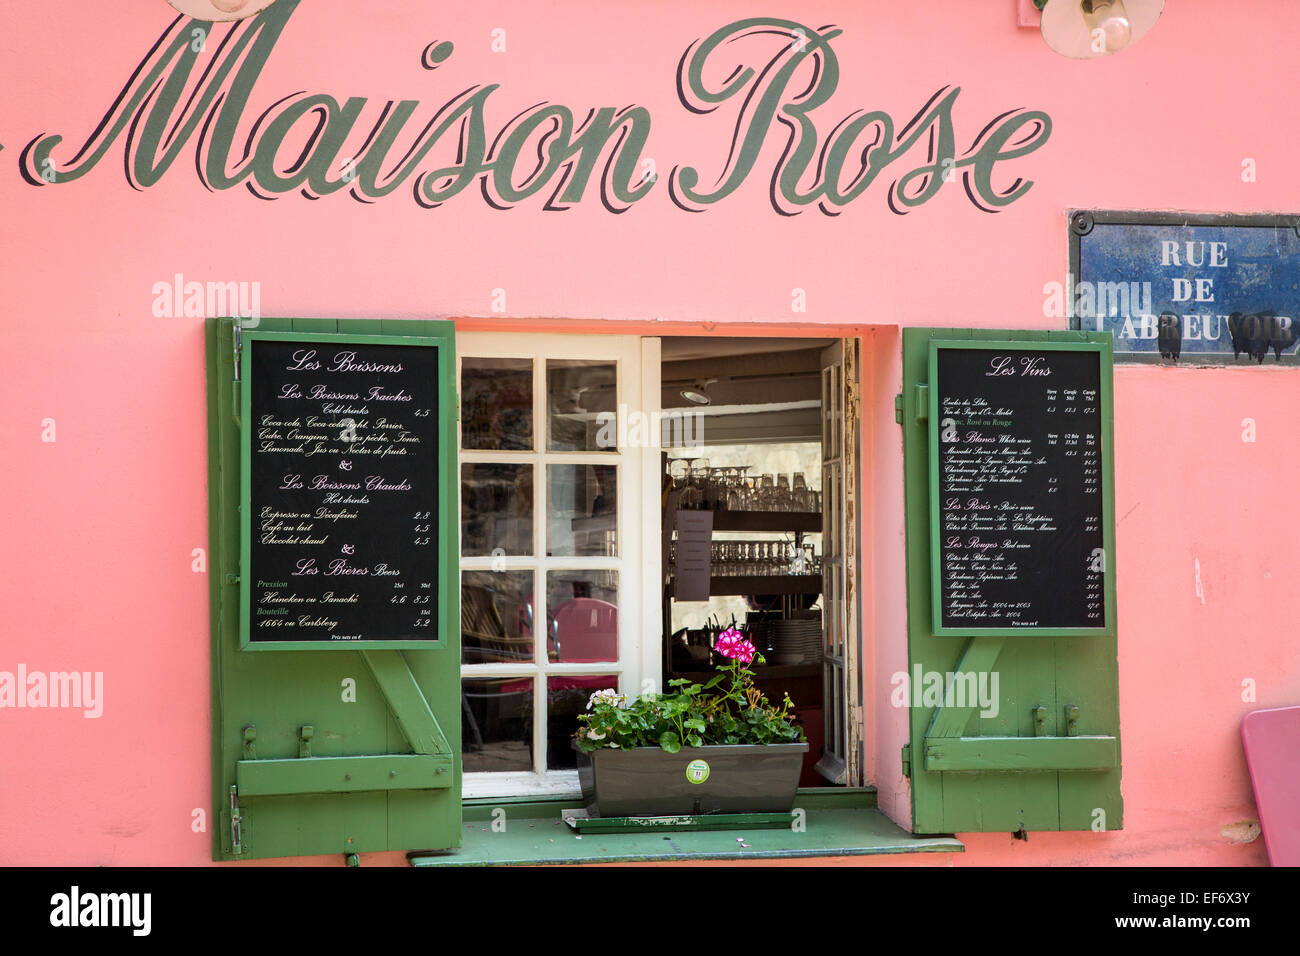 Cafe Maison Rose, Montmartre, Paris, France Stock Photo